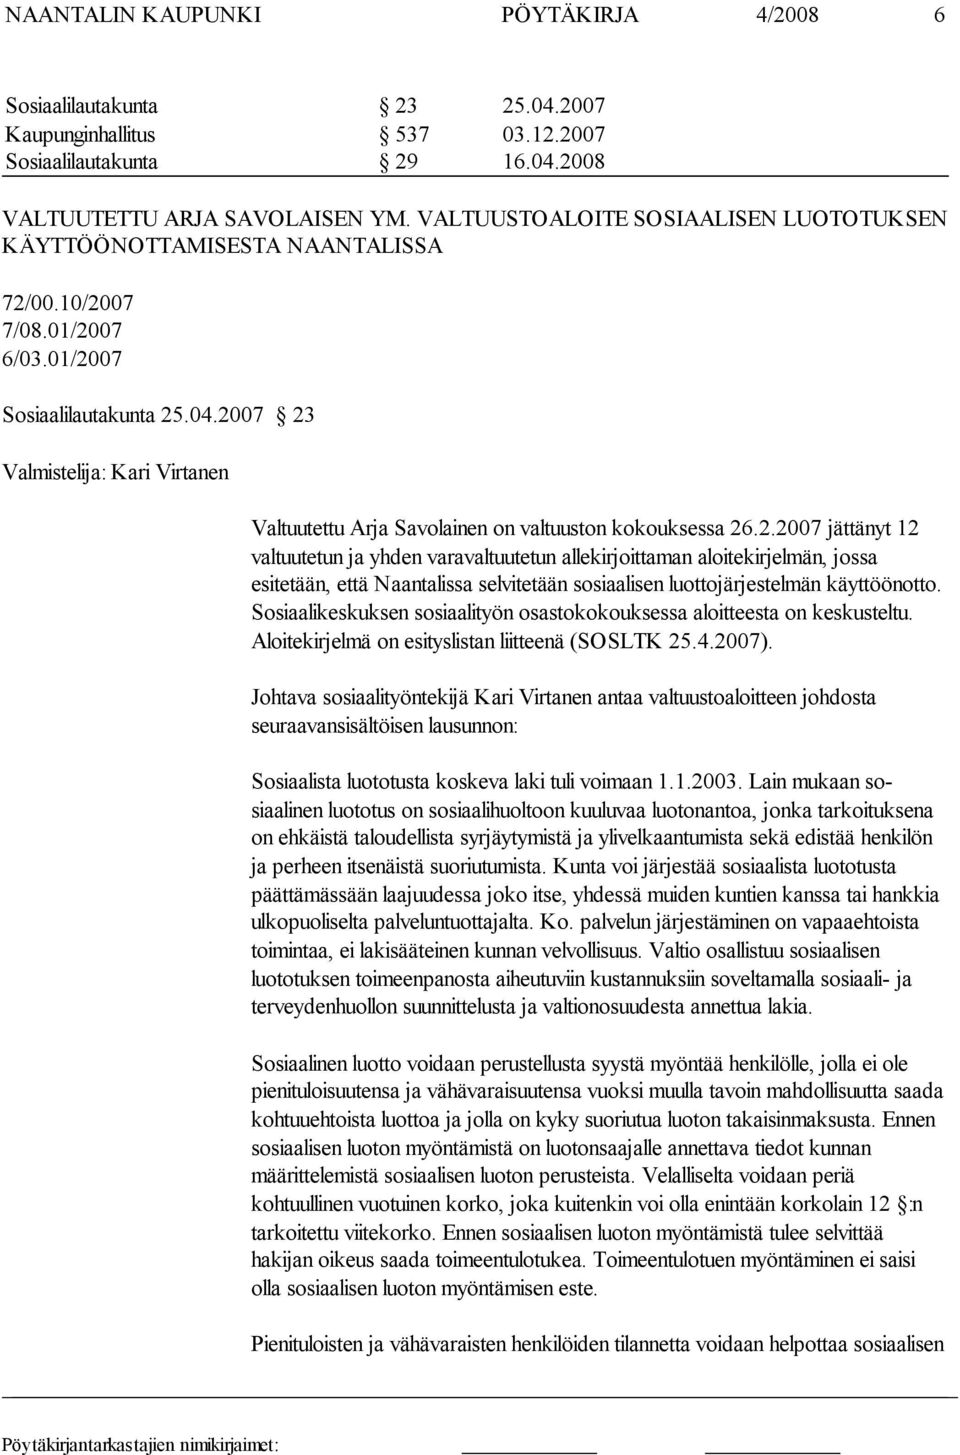 2007 23 Valmistelija: Kari Virtanen Valtuutettu Arja Savolainen on valtuuston kokouksessa 26.2.2007 jättänyt 12 valtuutetun ja yhden va ravaltuutetun allekirjoittaman aloitekirjelmän, jossa esitetään, että Naantalissa selvitetään sosiaalisen luottojärjestelmän käyttöönotto.